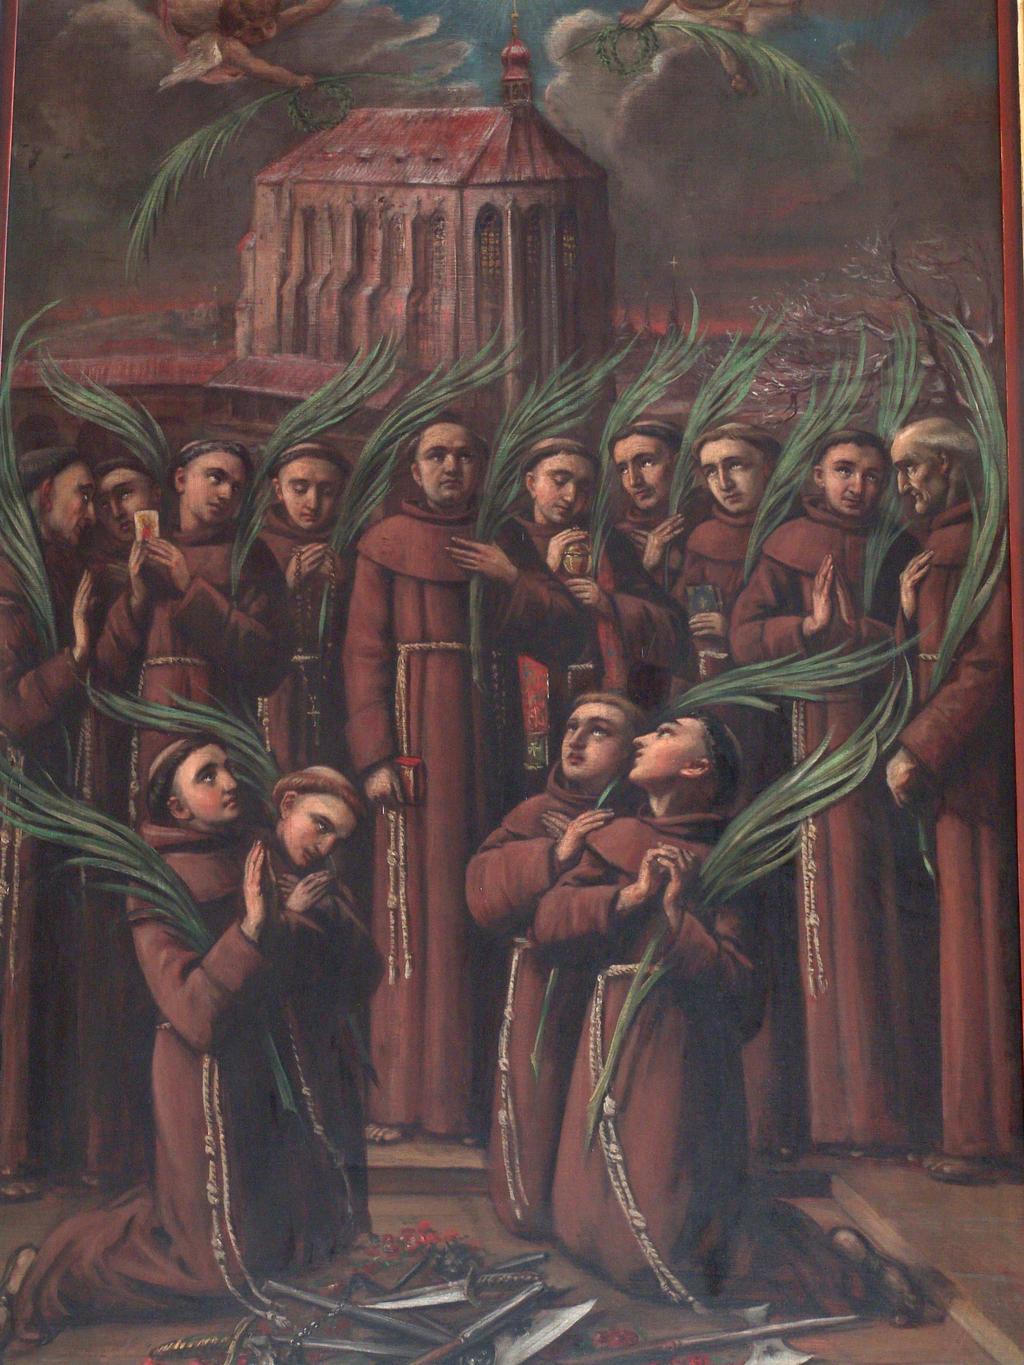 služebníky Menší bratry k apoštolské službě do pražského kláštera. Svým životem a smrtí vydali svědectví pravé víře.